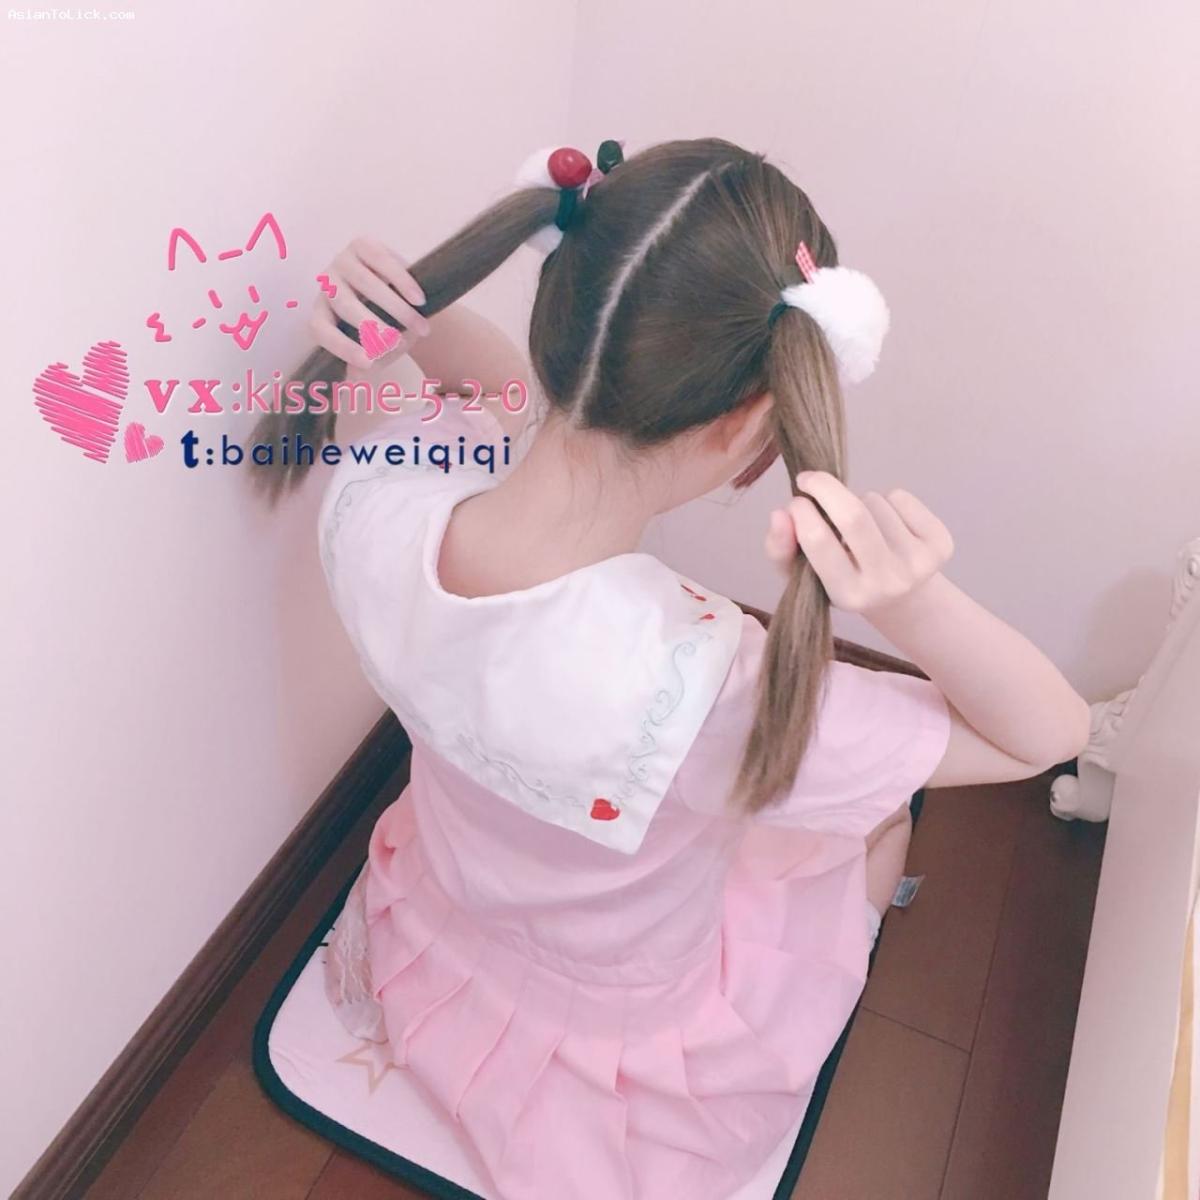 七七酱 粉紅水手服VS胸貼 – Very cute loli girl – (28P)